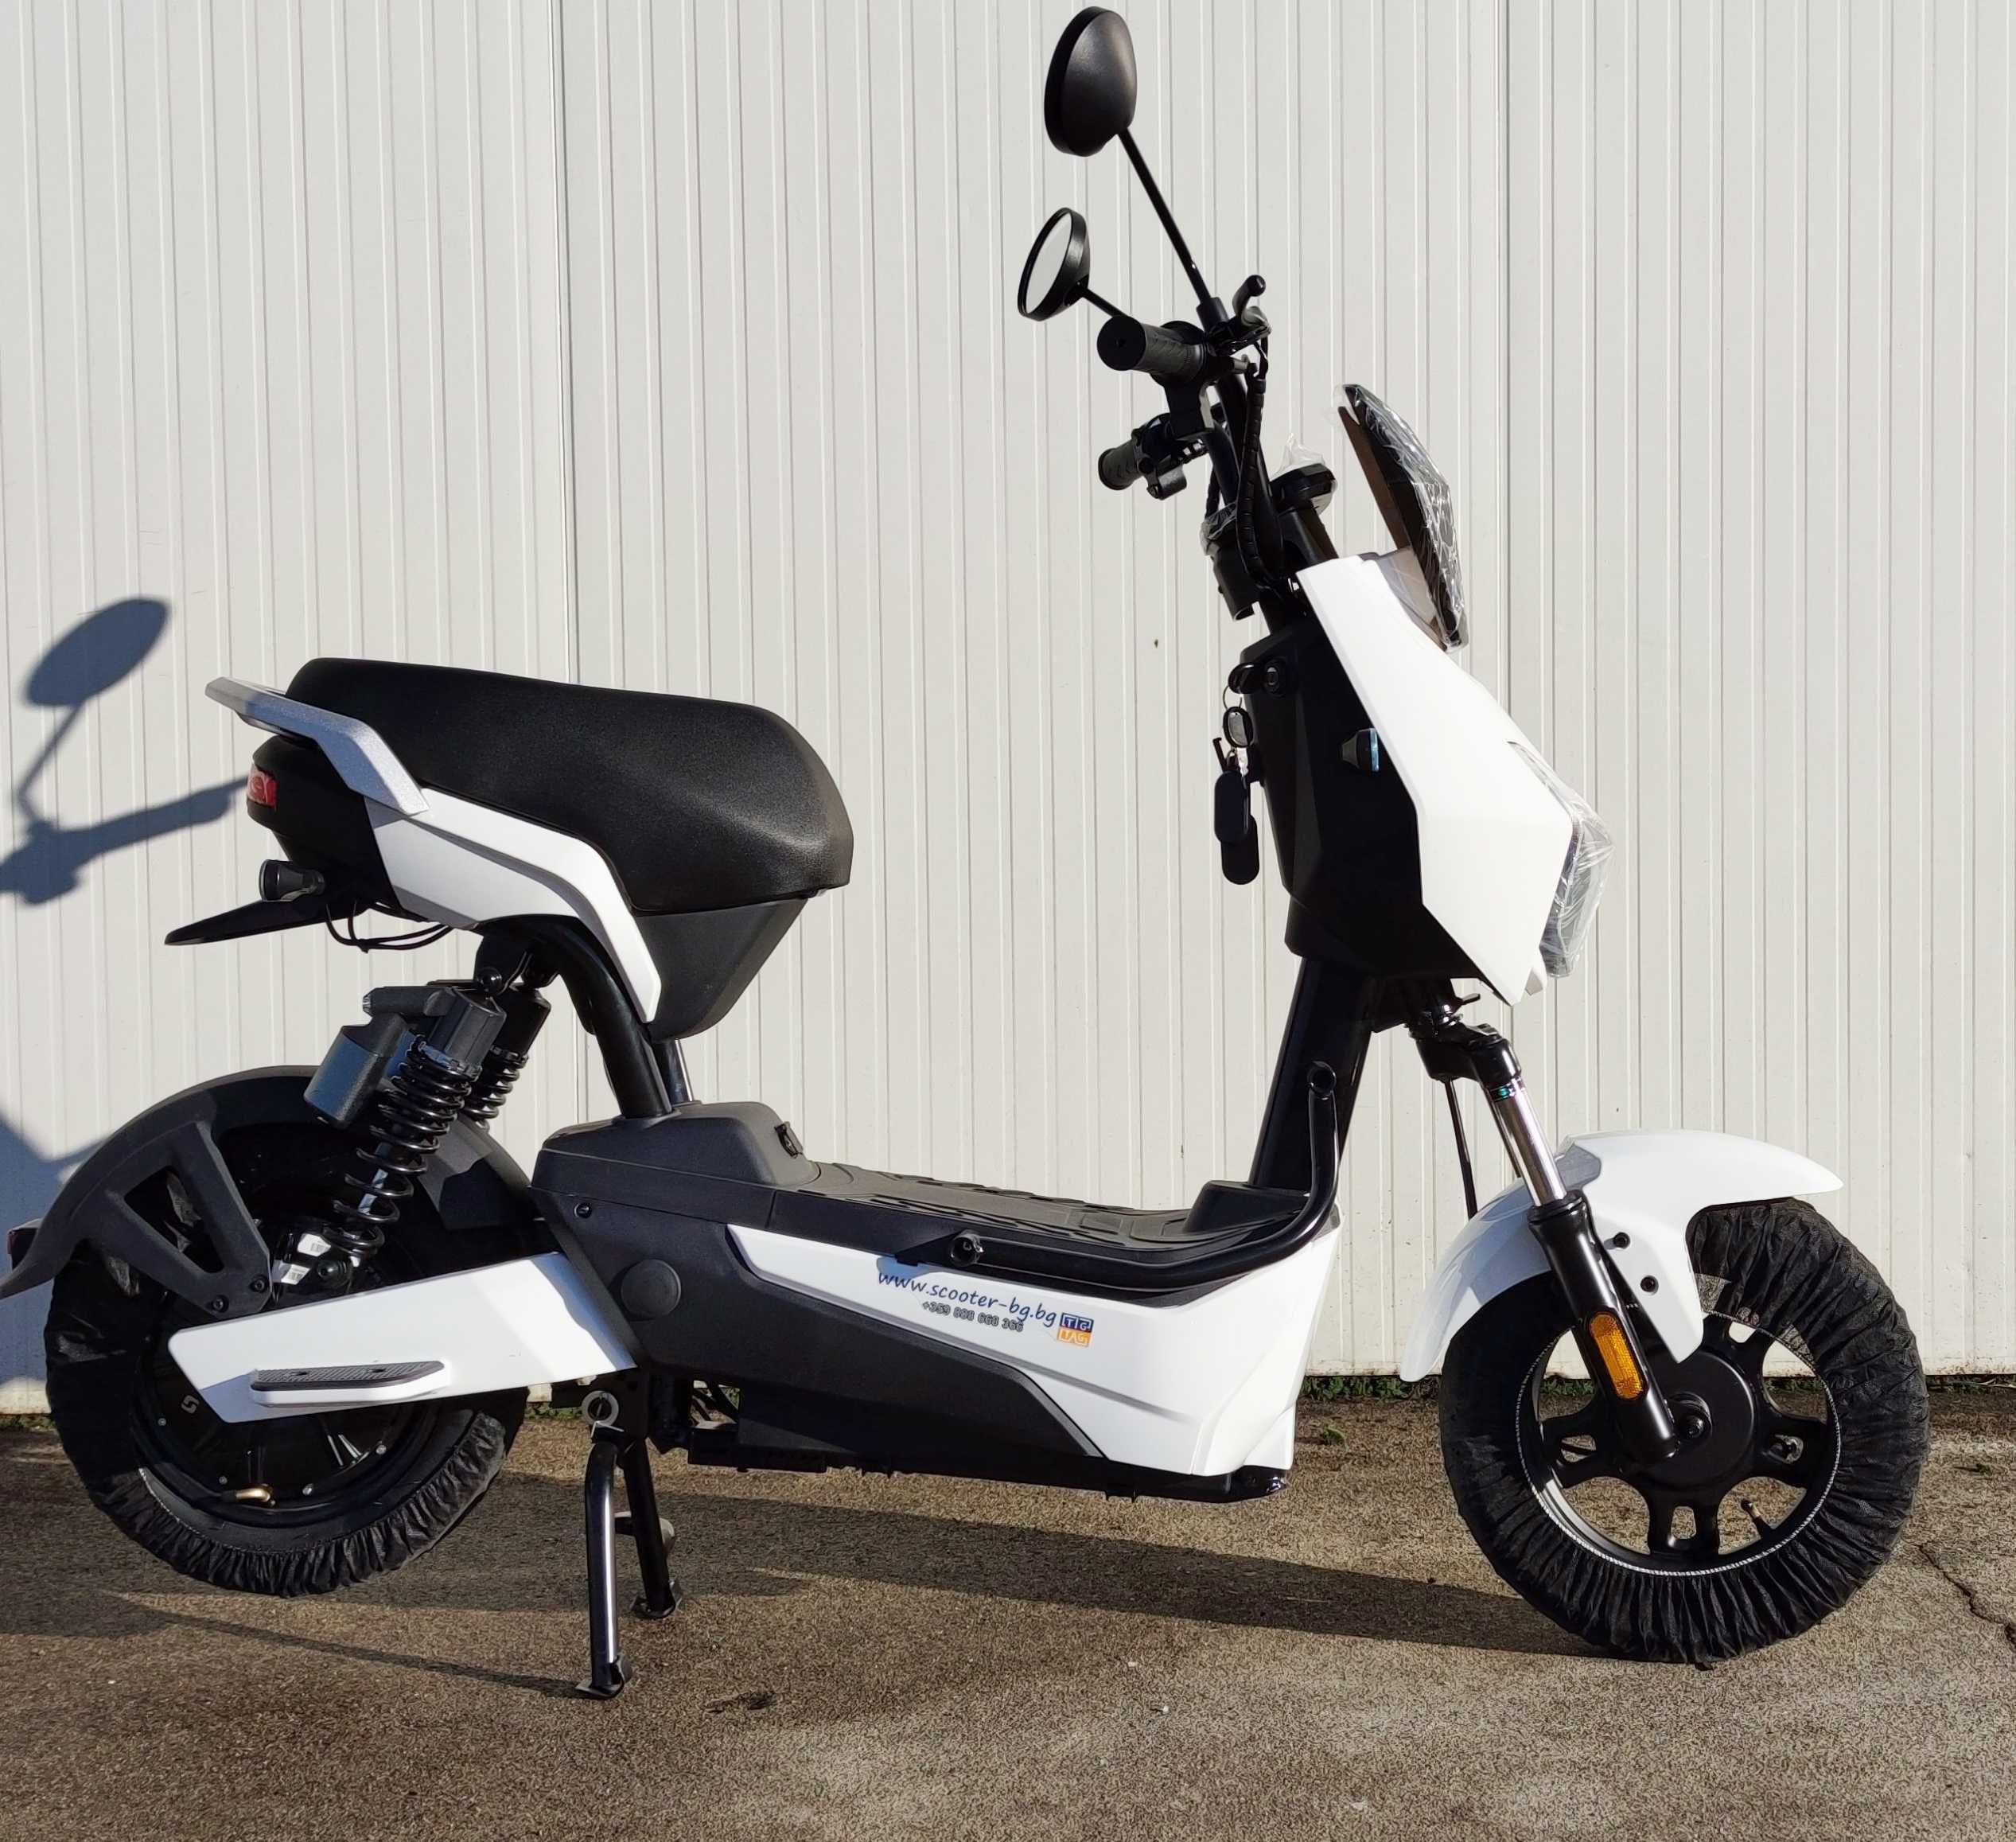 Електрически скутер 500 вата модел YCL бял цвят 20Ah батерия